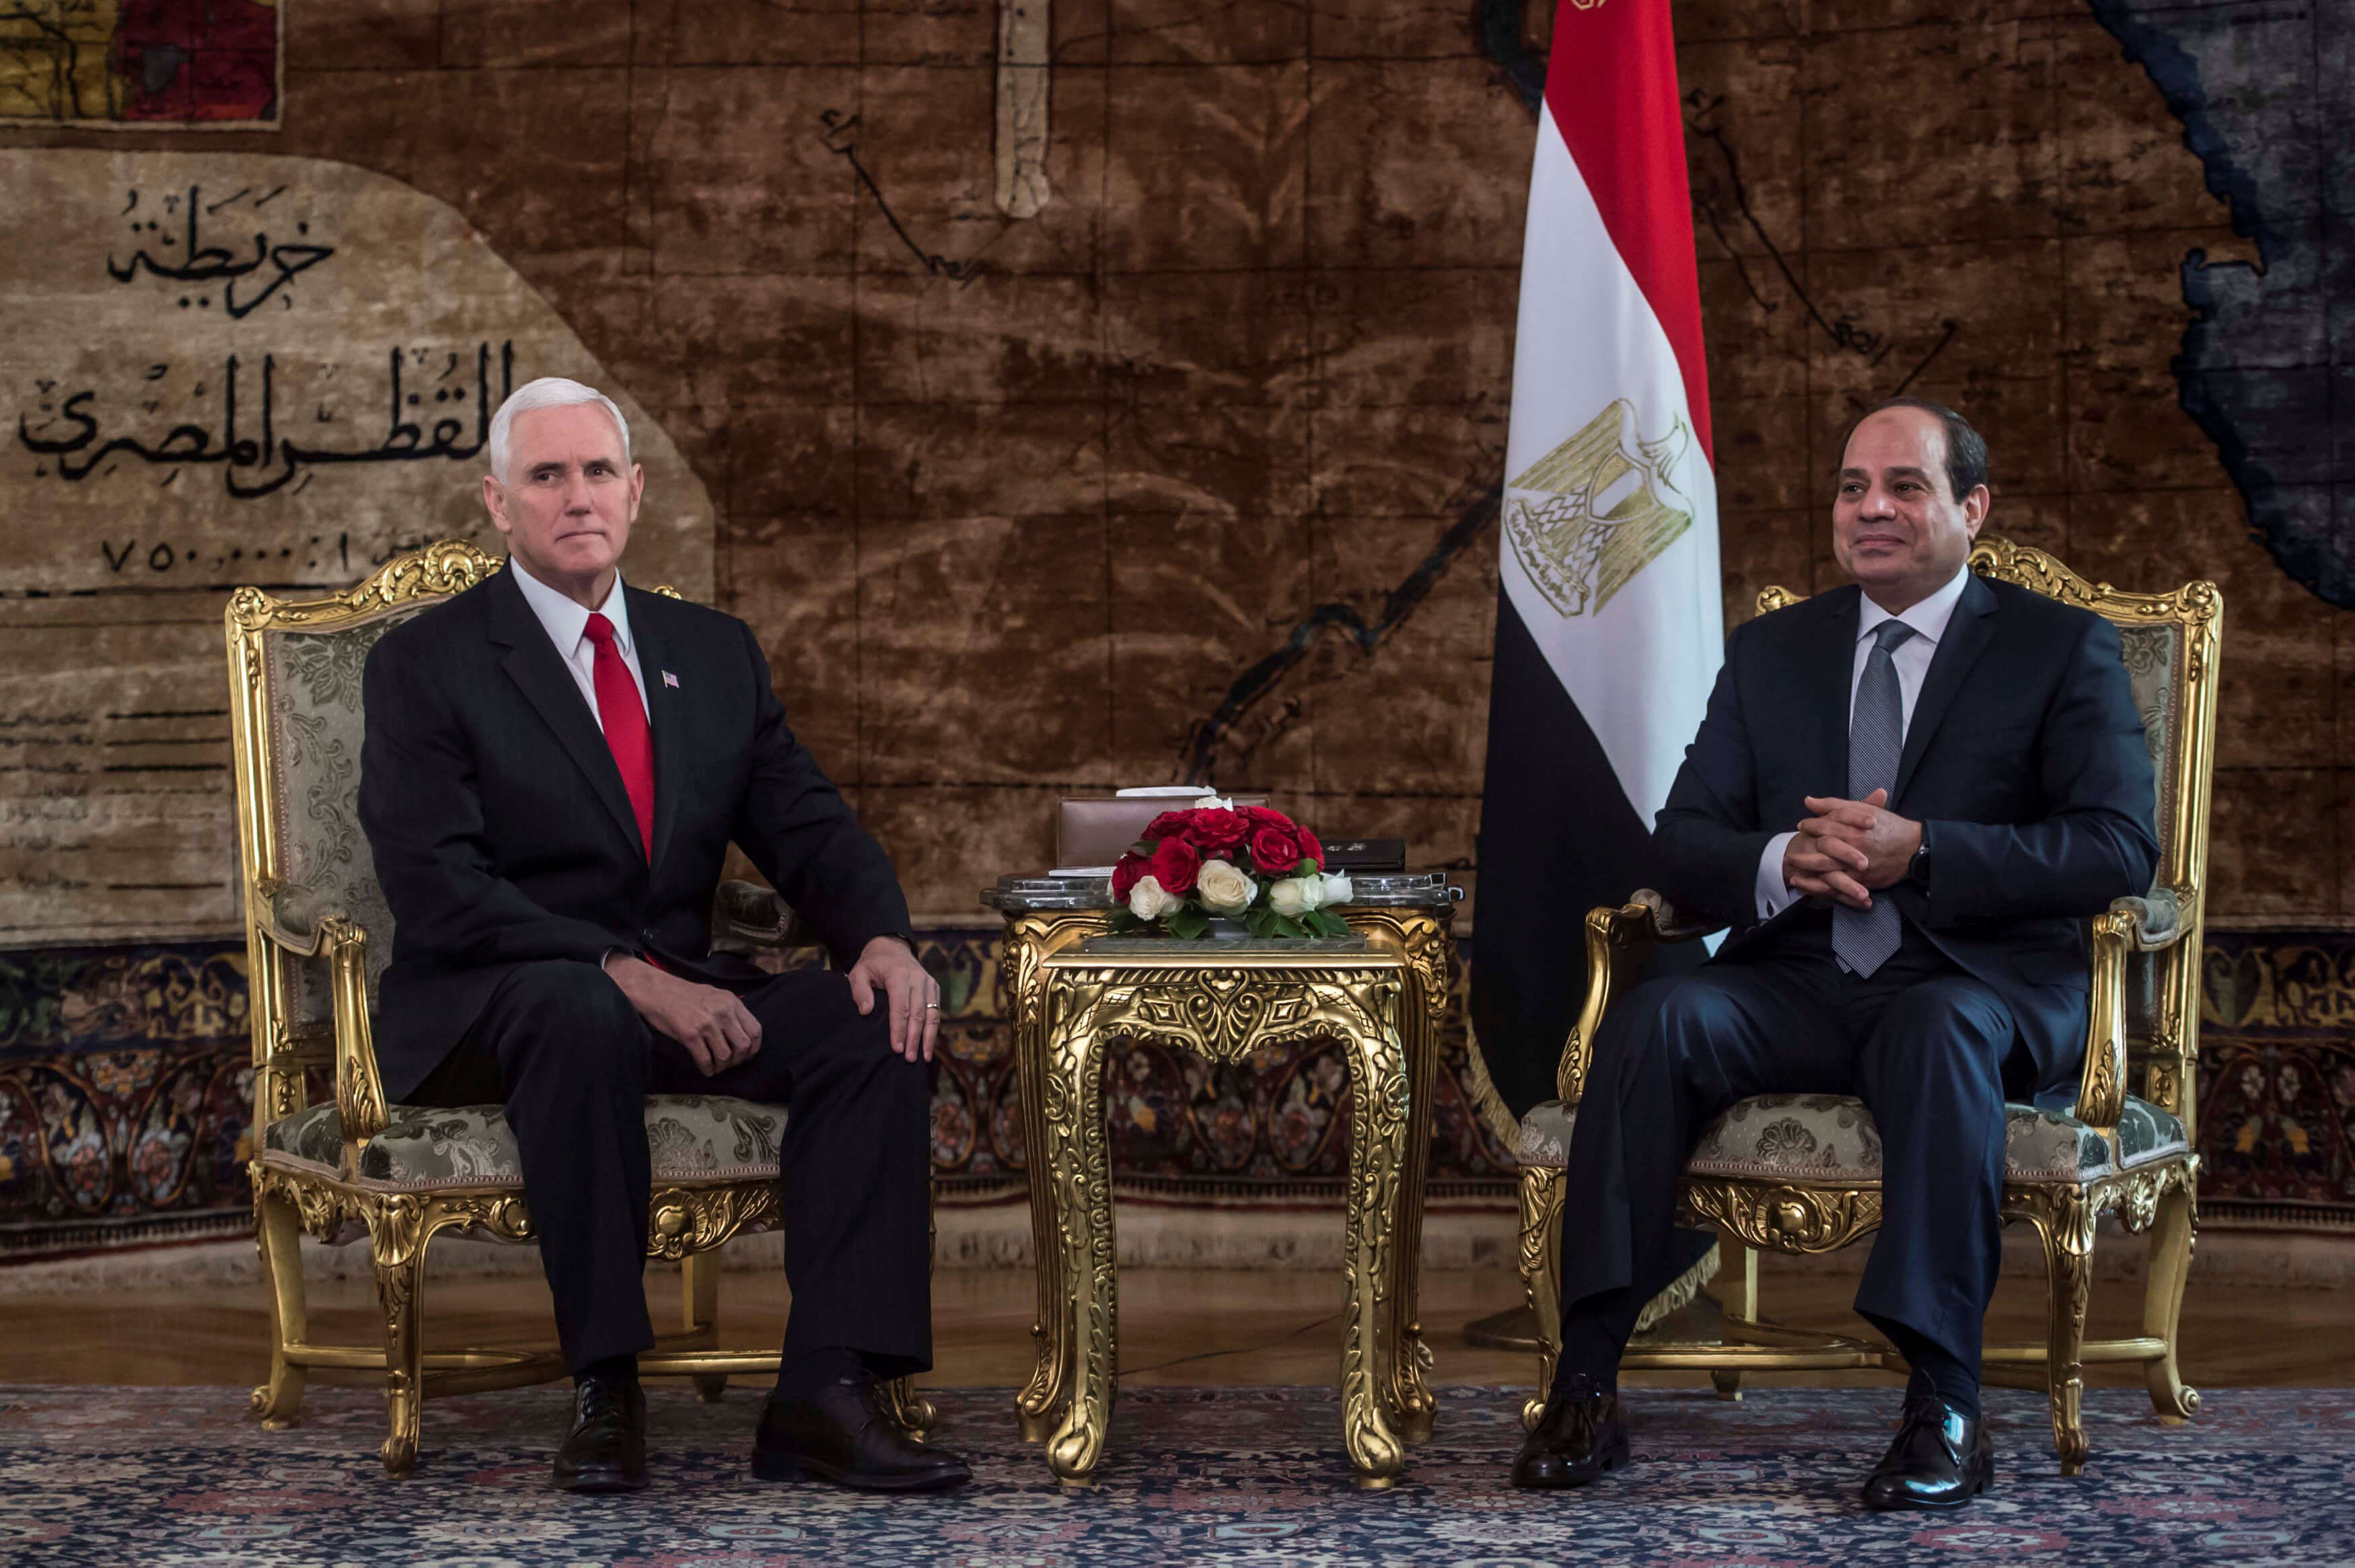 Vicepresidente de EU llega a Egipto para iniciar gira en Oriente Medio